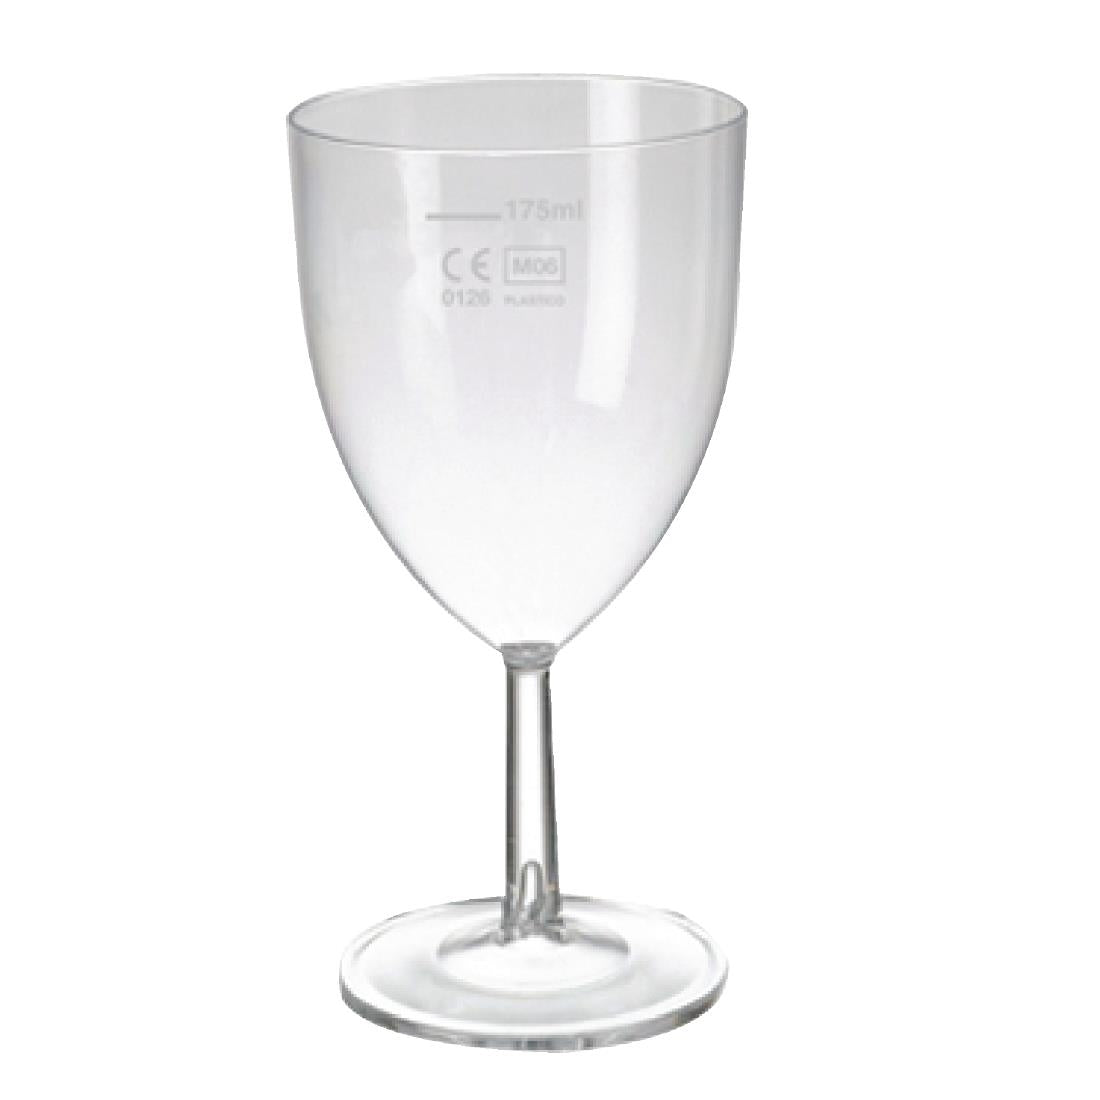 eGreen Polystyrene Wine Glasses 200ml UKCA CE Marked at 175ml (Pack of 48)